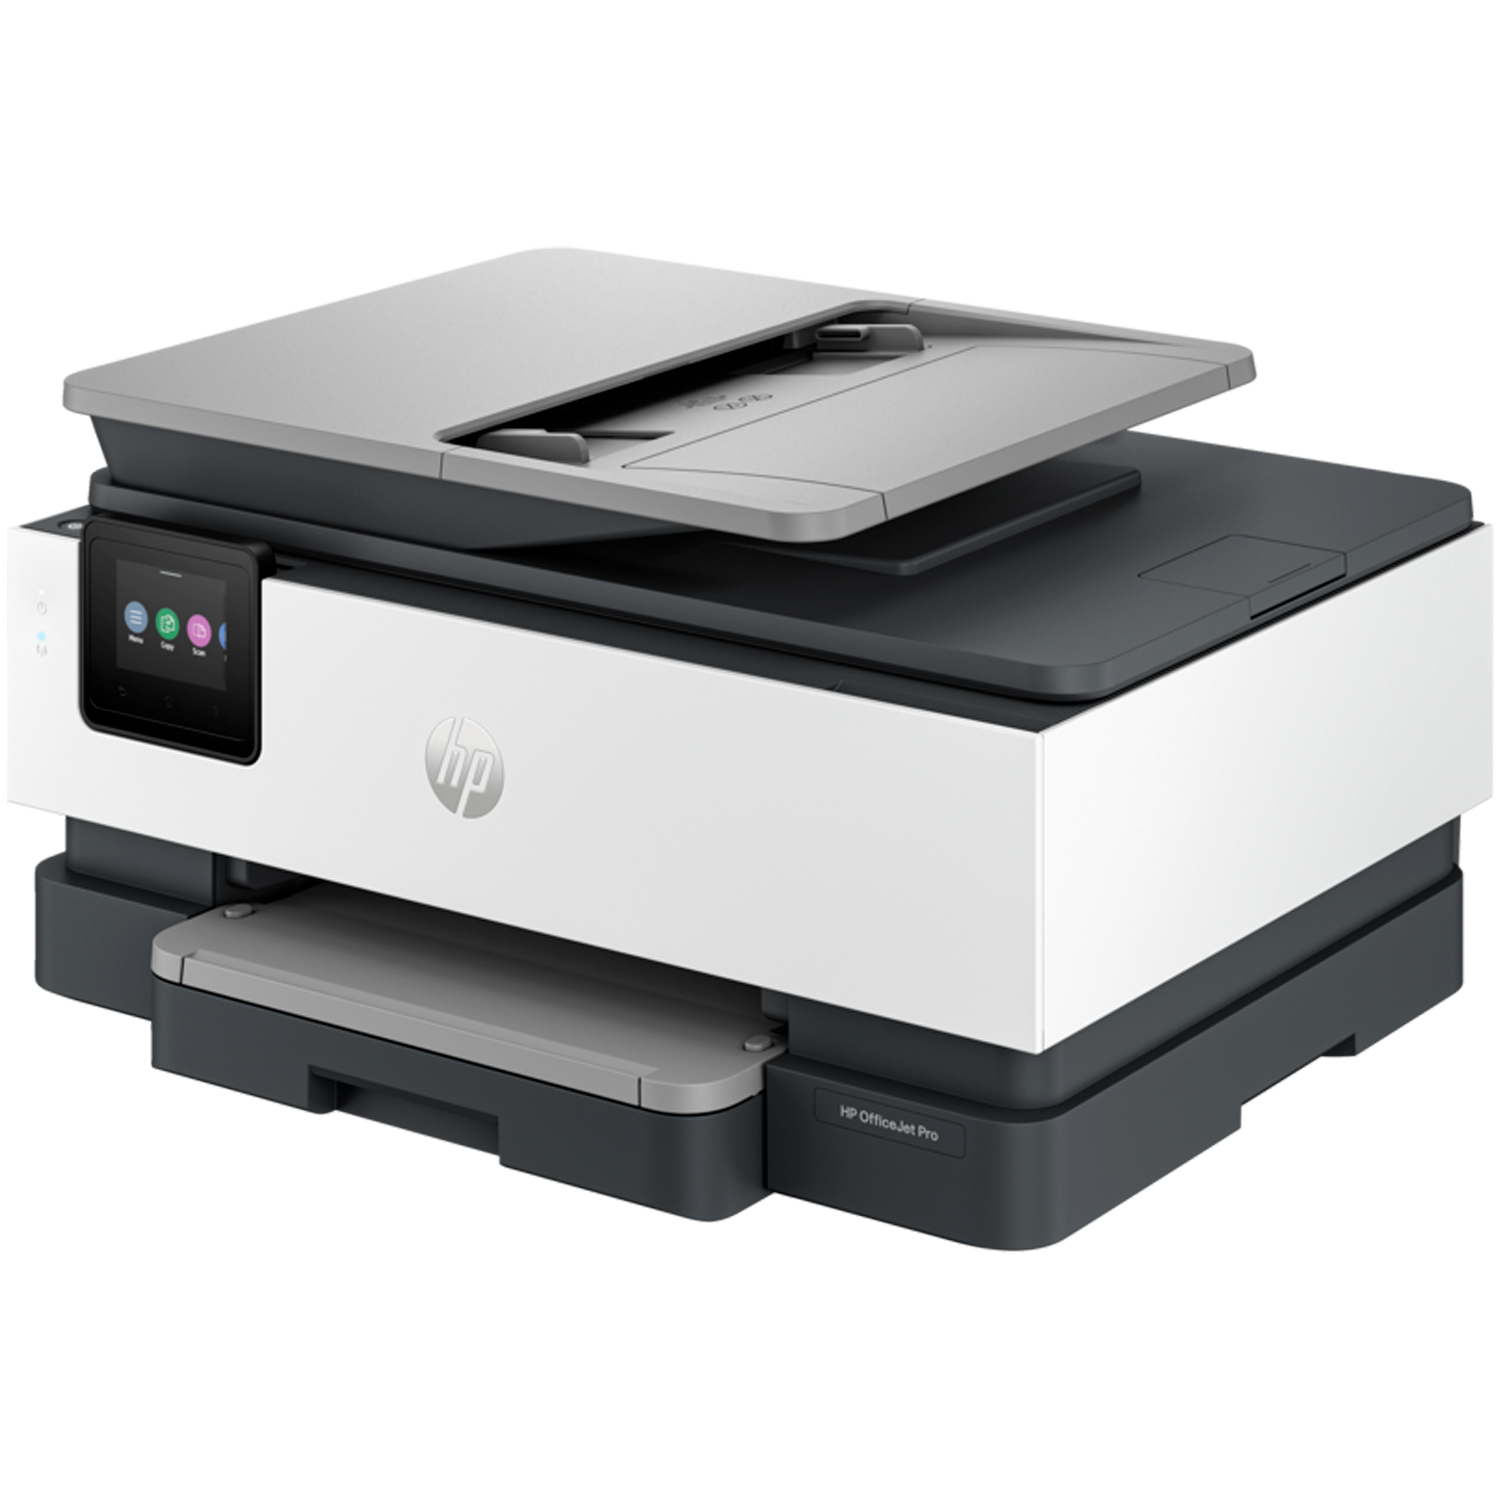 מדפסת משולבת צבעונית אלחוטית HP OfficeJet Pro 8133 AiO - צבע לבן שלוש שנות אחריות ע"י היבואן הרשמי